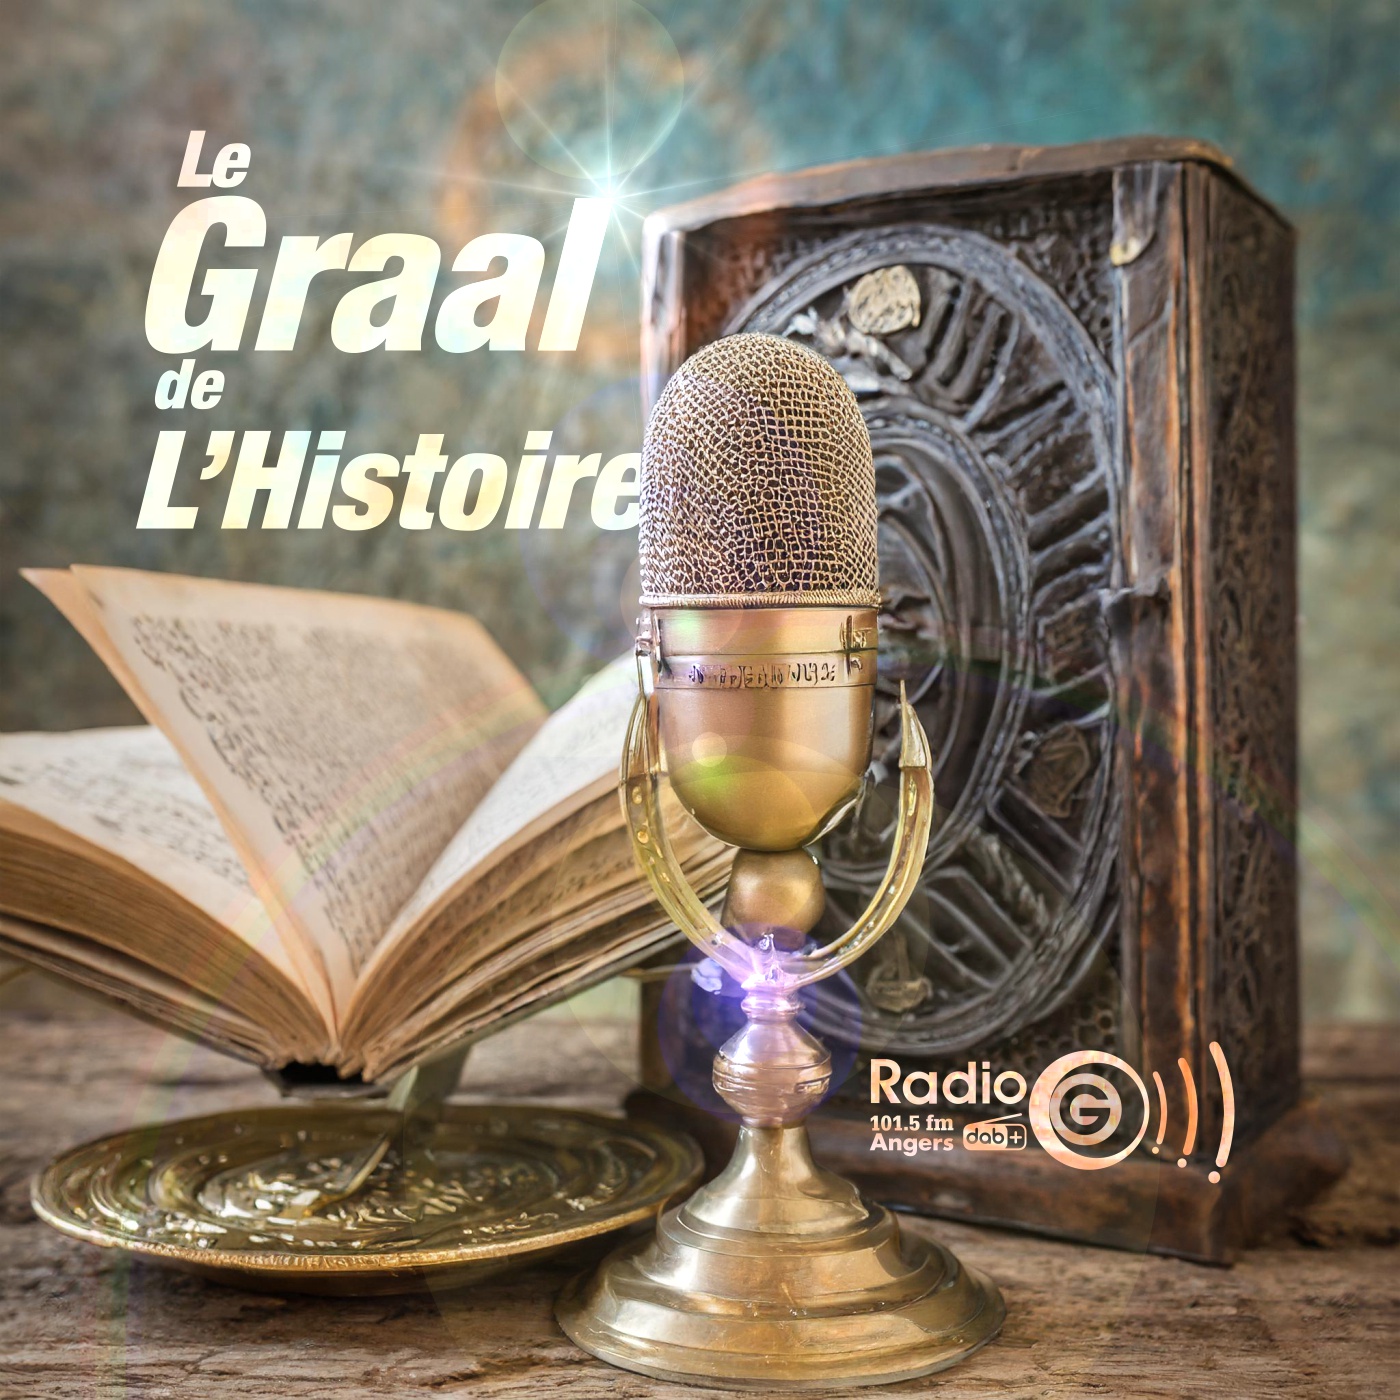 Graalv3 14 Ronald Le Graal de l'Histoire, un podcast avec des voix et des musiques en intelligence artificielles Graalv3 14 Ronald